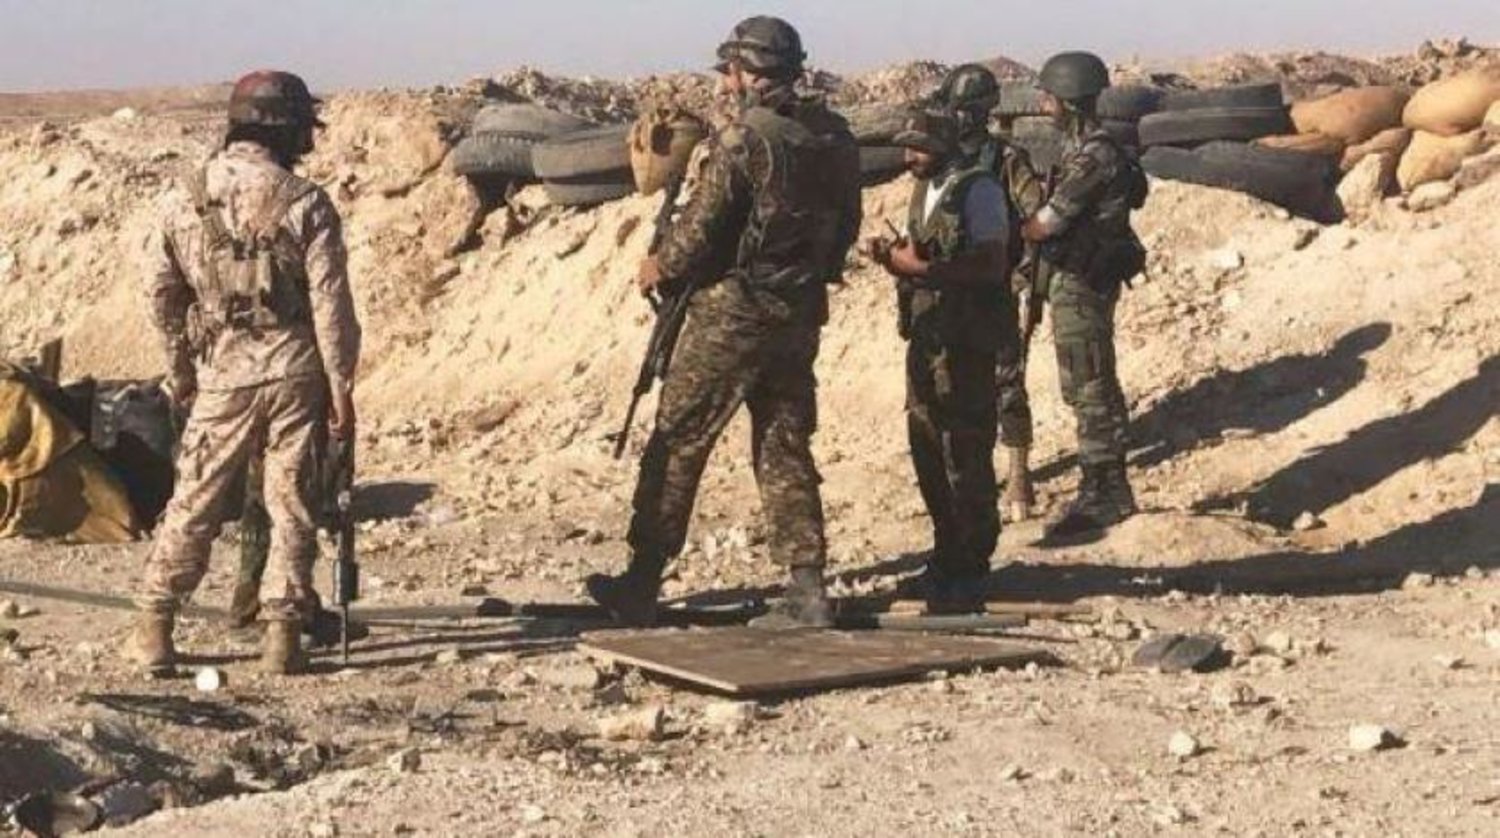 İran’a bağlı milisler eski er-Rahba Kalesi’nin içerisinde silah ve mühimmat saklıyor (Suriye İnsan Hakları Gözlemevi)
